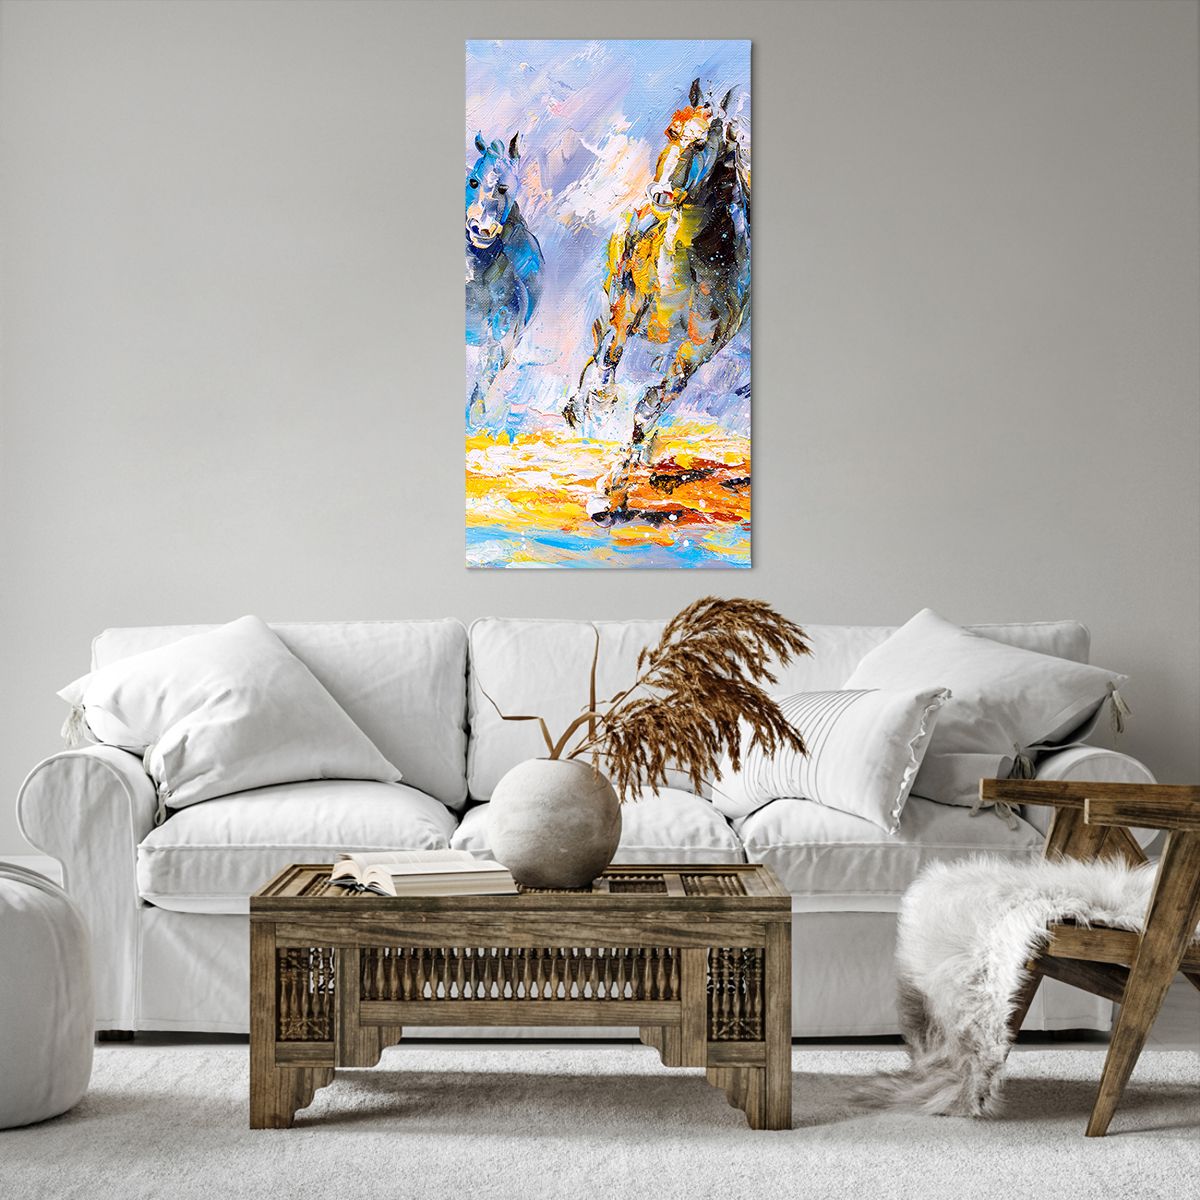 Bild auf Leinwand Tiere, Bild auf Leinwand Die Pferde, Bild auf Leinwand Impressionismus, Bild auf Leinwand Kunst, Bild auf Leinwand Galopp